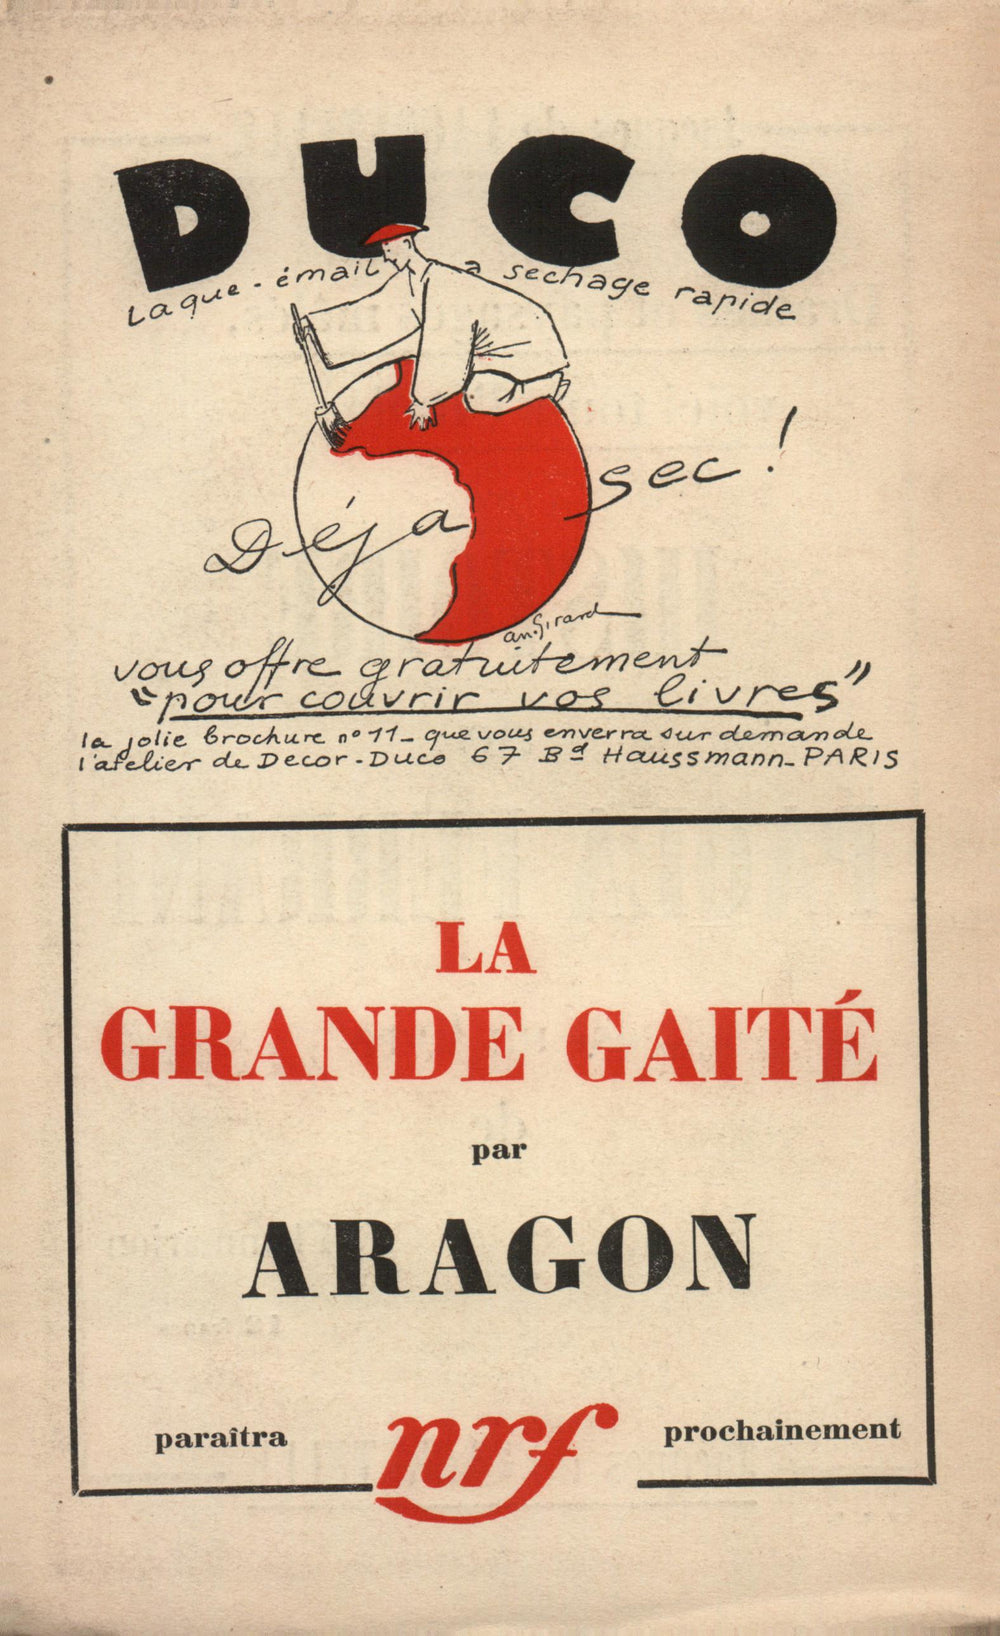 La Nouvelle Revue Française N' 191 (Aoűt 1929)